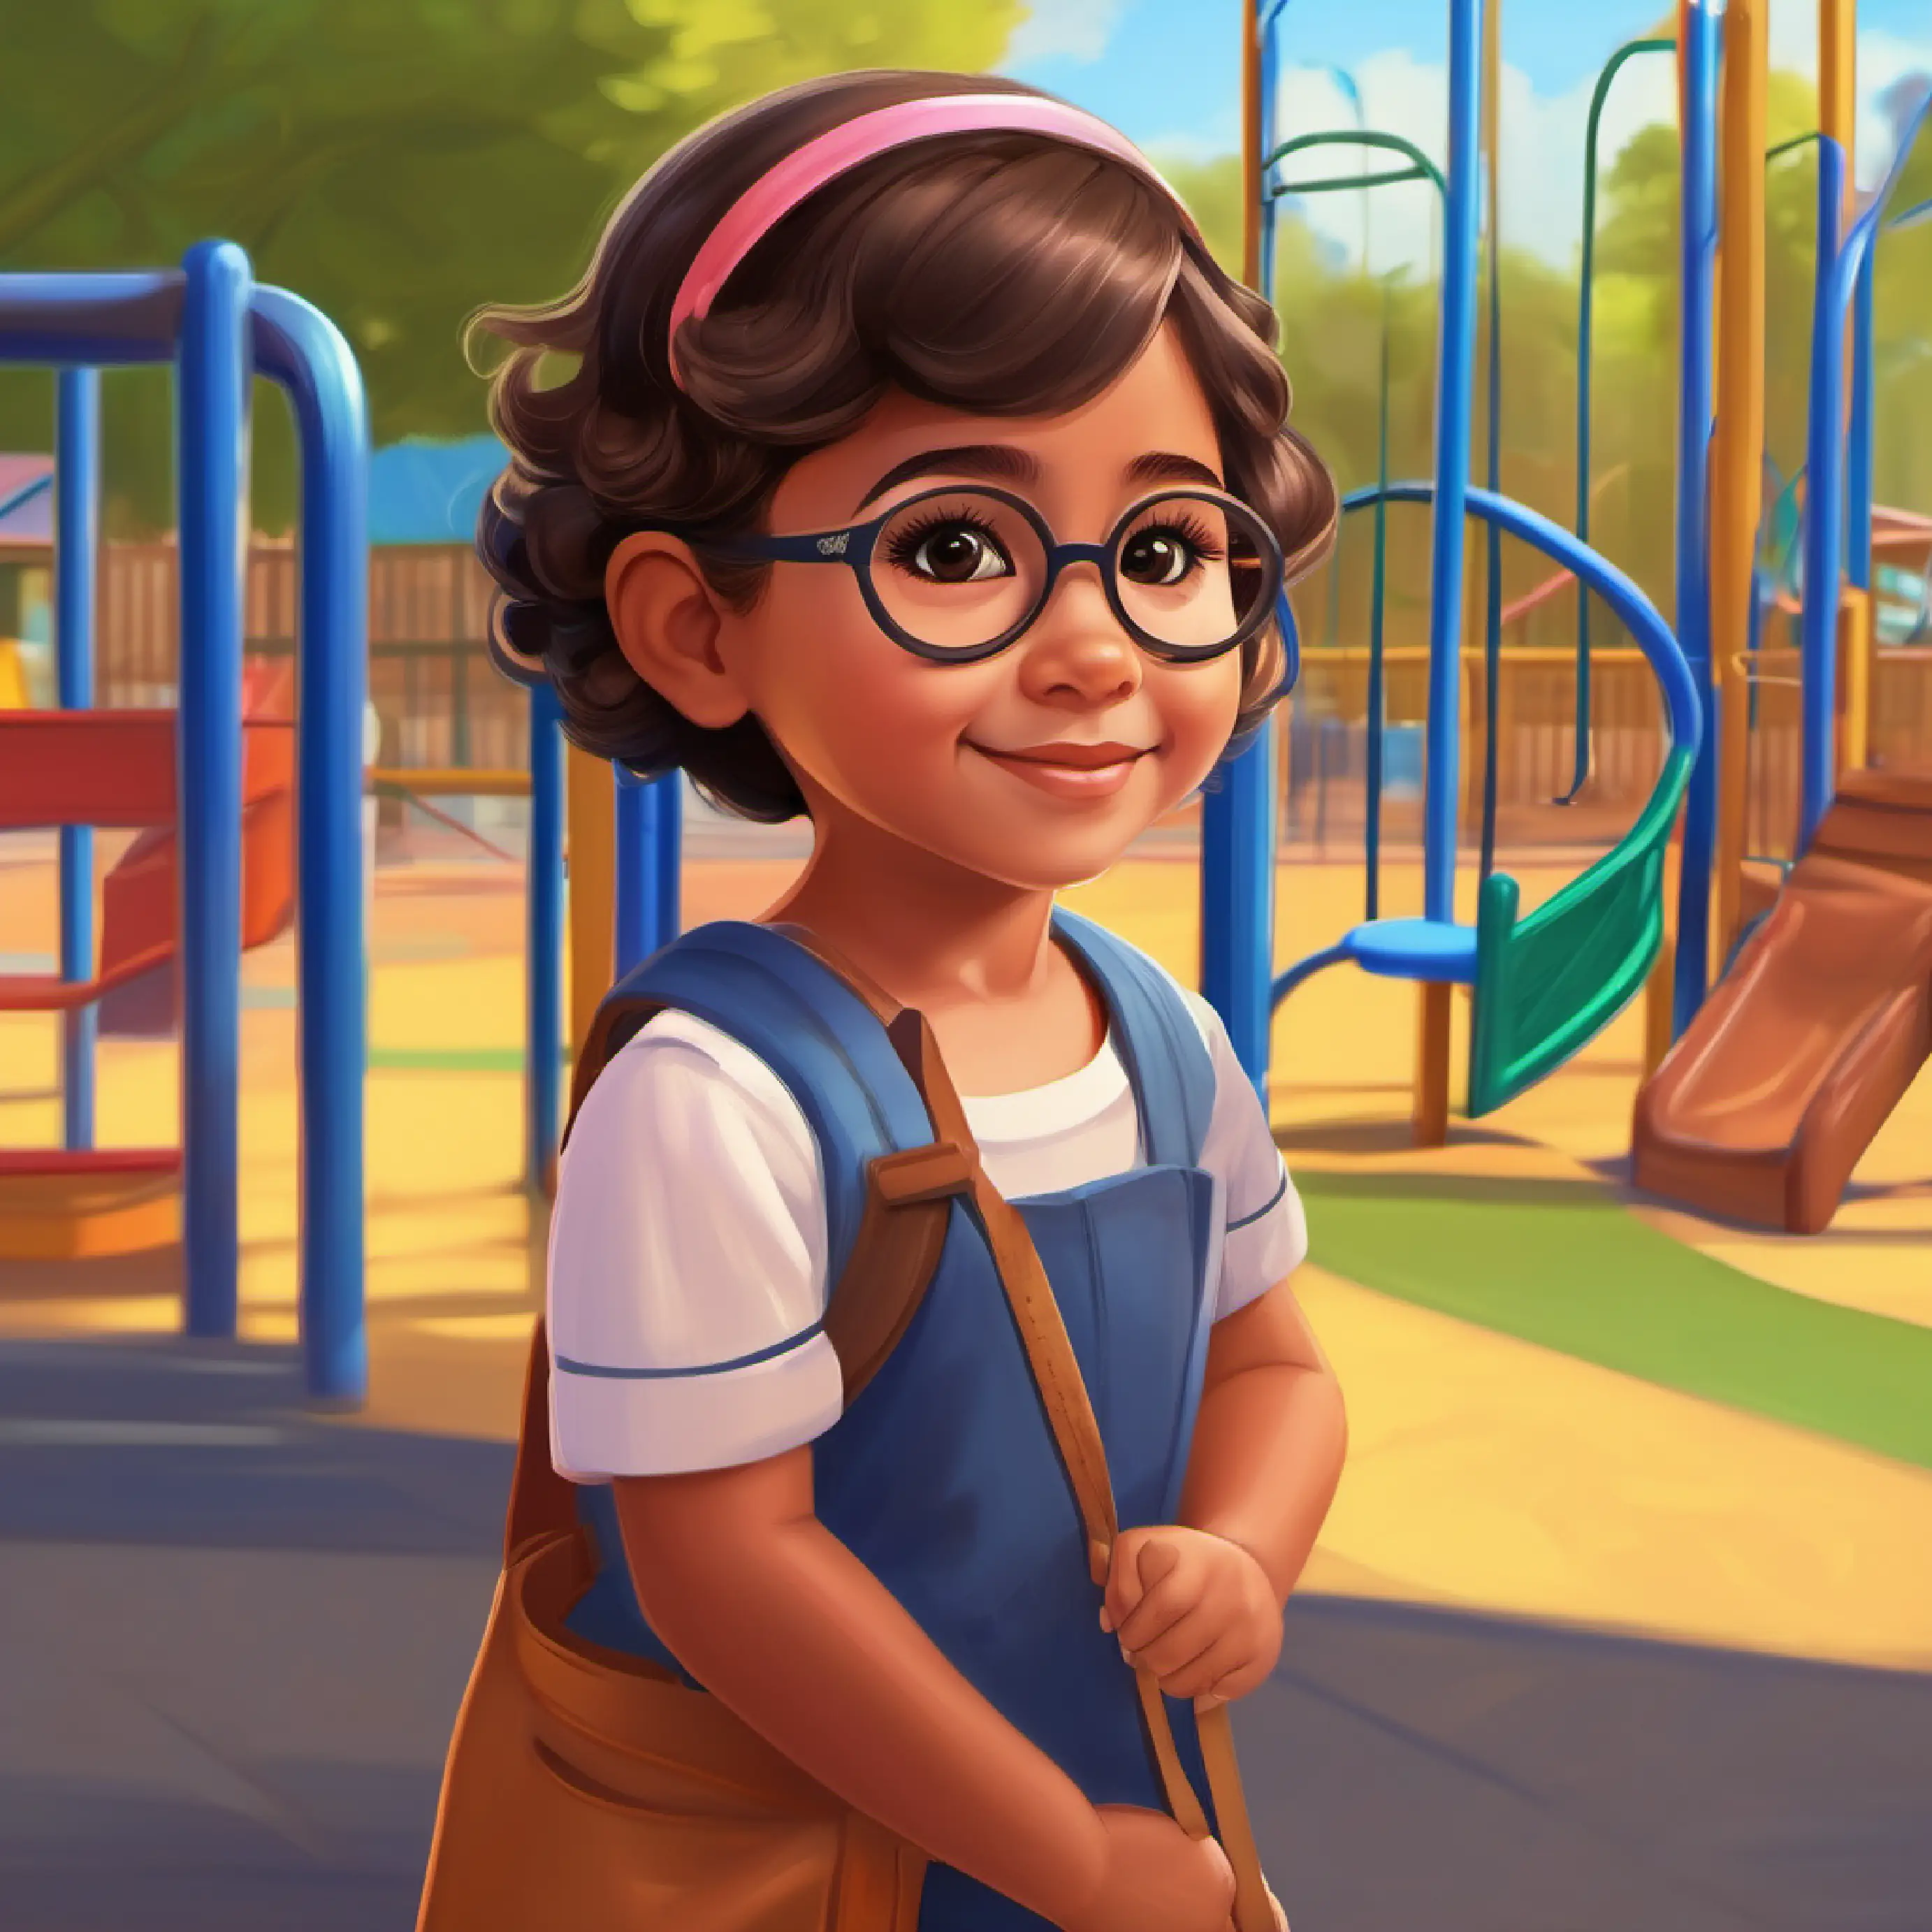 Nayeli on the playground wearing her eyeglasses.